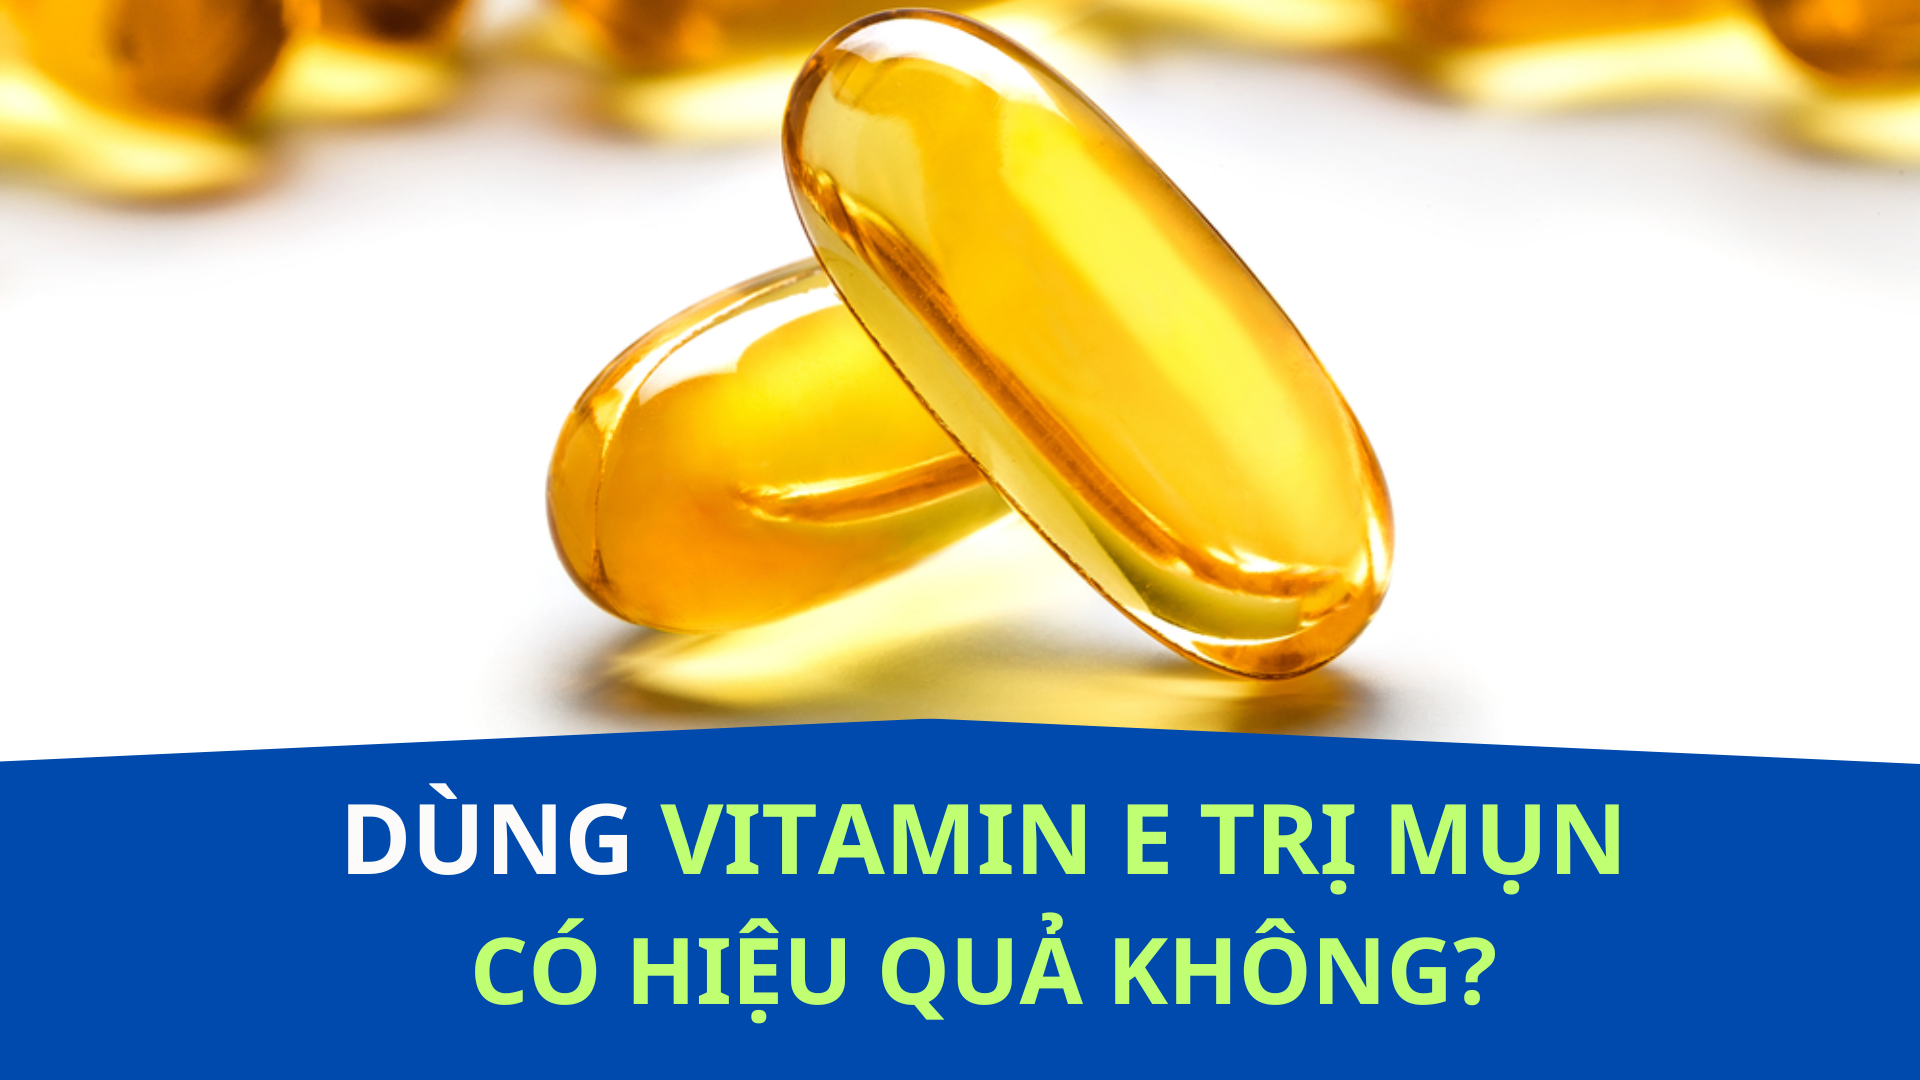 Vitamin E có thể cải thiện sức khỏe da và hỗ trợ trị mụn, nhưng hiệu quả chưa được nghiên cứu đầy đủ. Dầu vitamin E có thể giúp giảm viêm và mờ vết thâm, nhưng cần thận trọng khi sử dụng để tránh kích ứng.